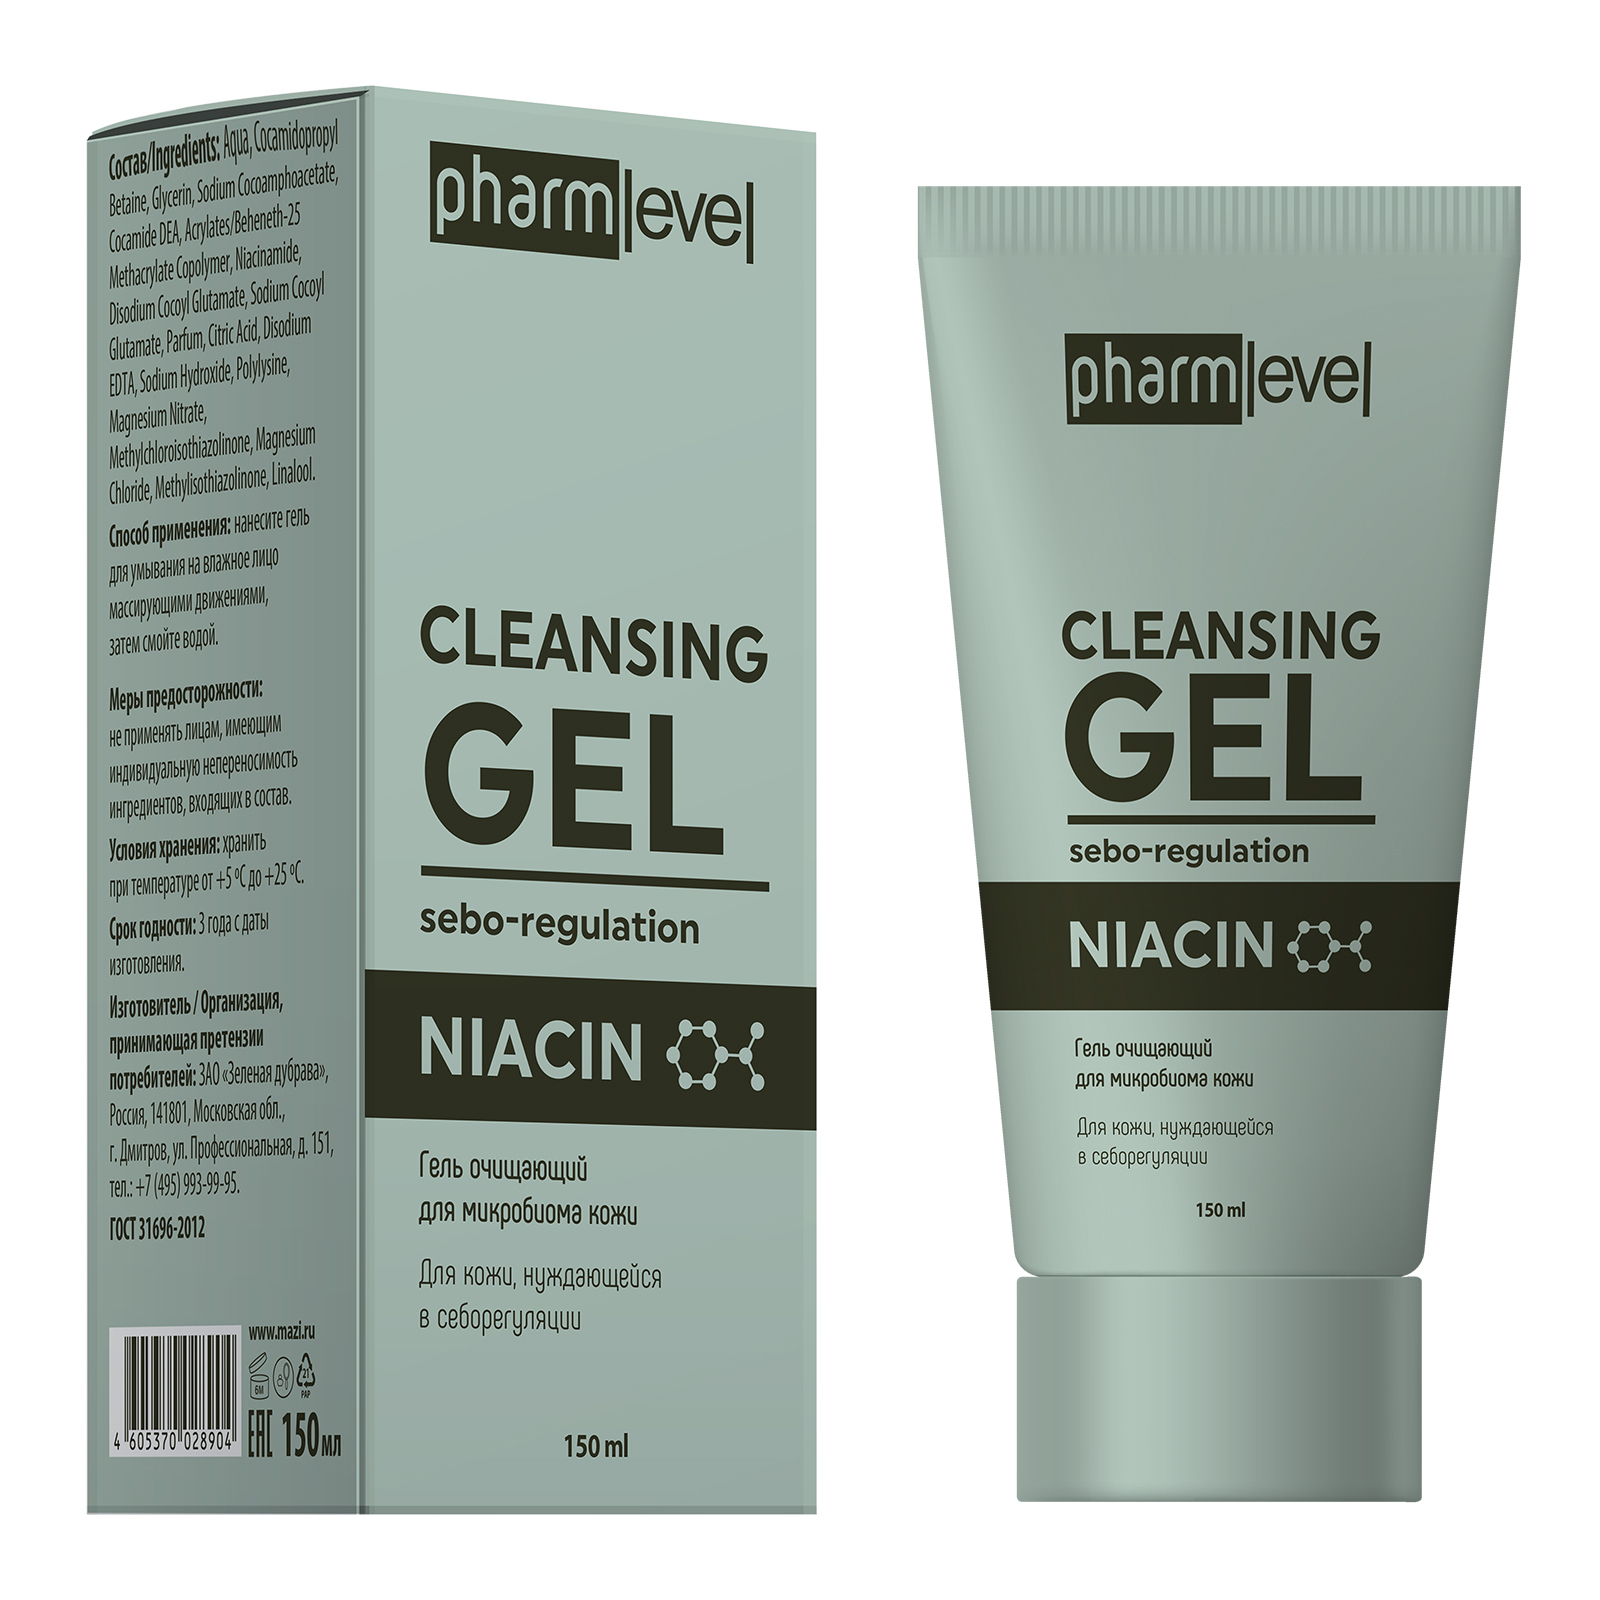 Гель очищающий для микробиома кожи Pharmlevel NIACIN 150 мл pharmlevel гель интенсив локального действия niacin